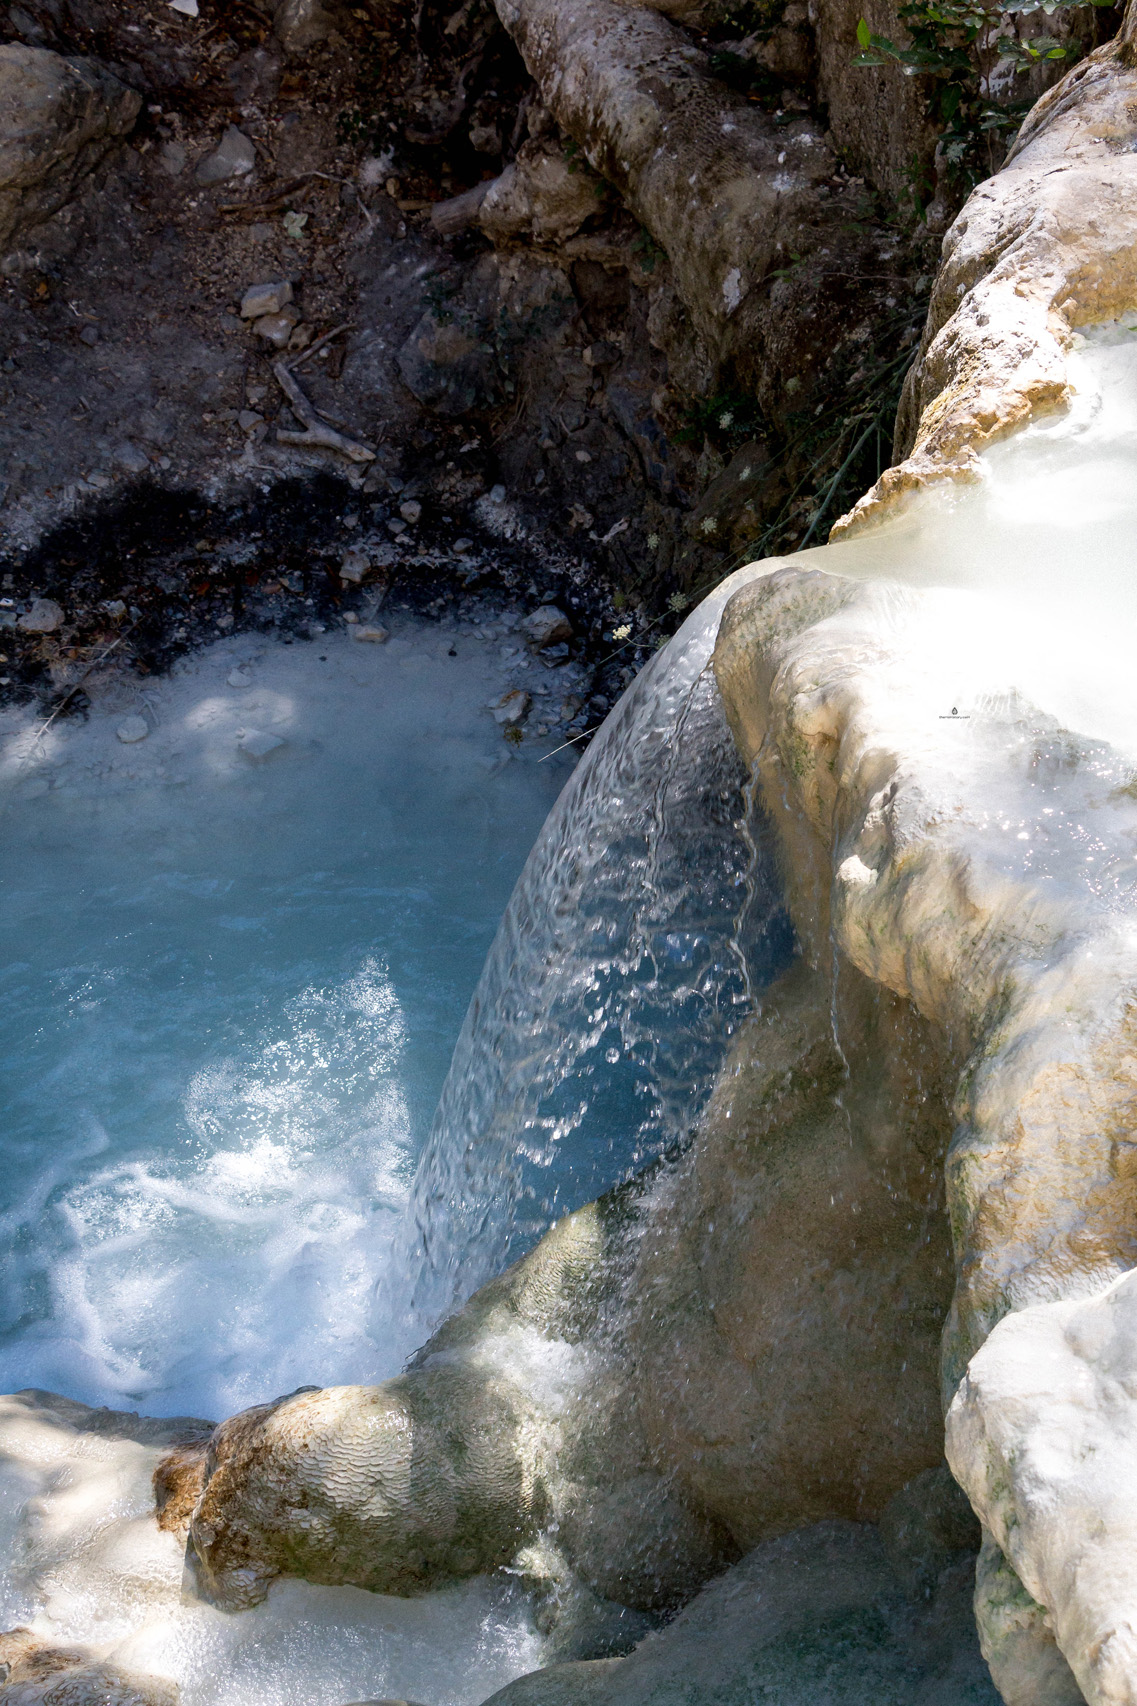 Thermal springs in Bagni San Filippo, Tuscany